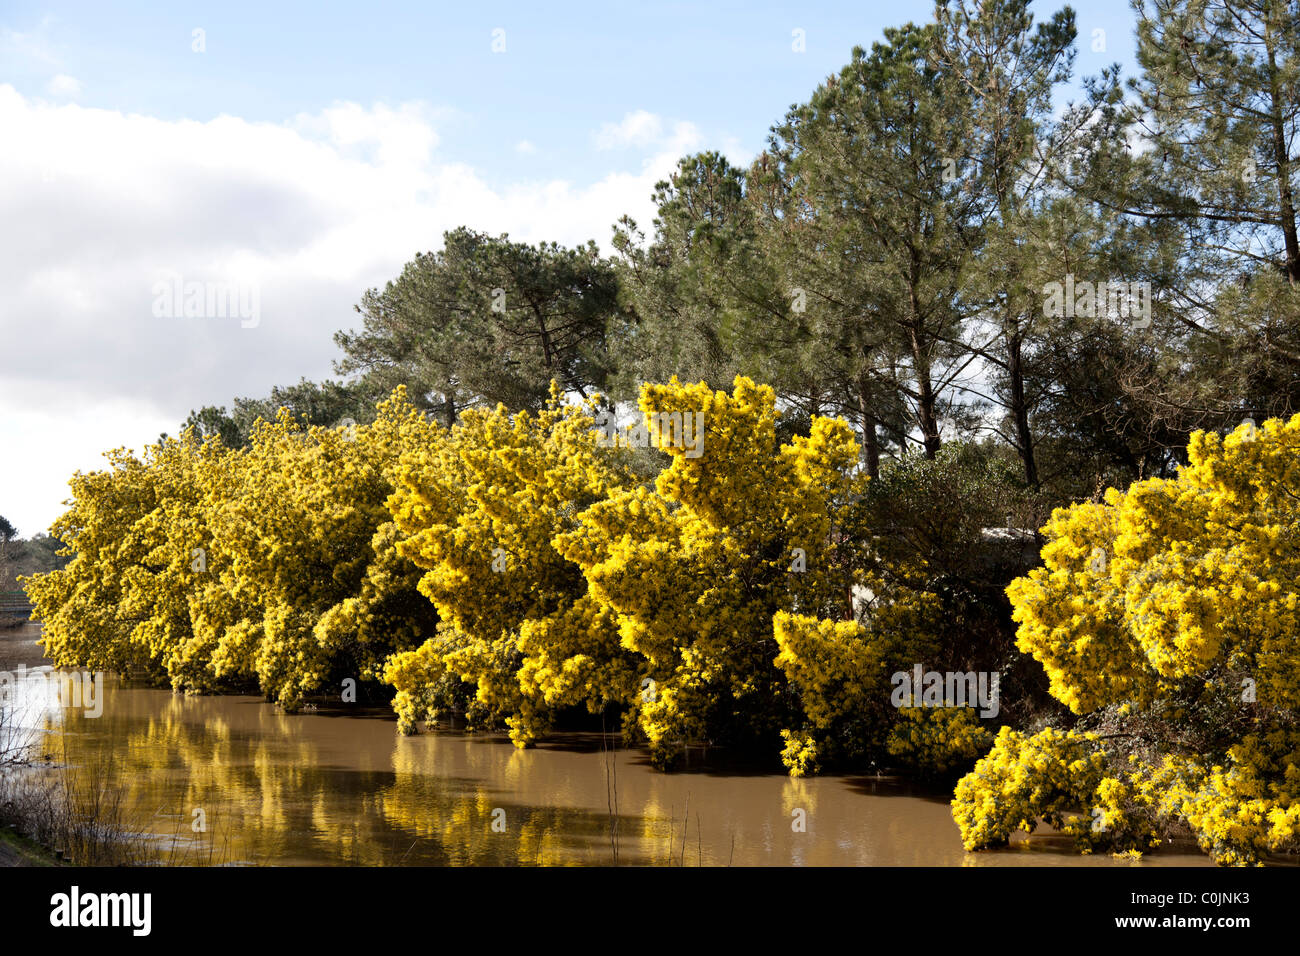 Une rangée d'arbres mimosa (Acacia dealbata) dans fleur pleine sur une rive du fleuve Boudigau (France) une rangée de mimosas en hiver. Banque D'Images